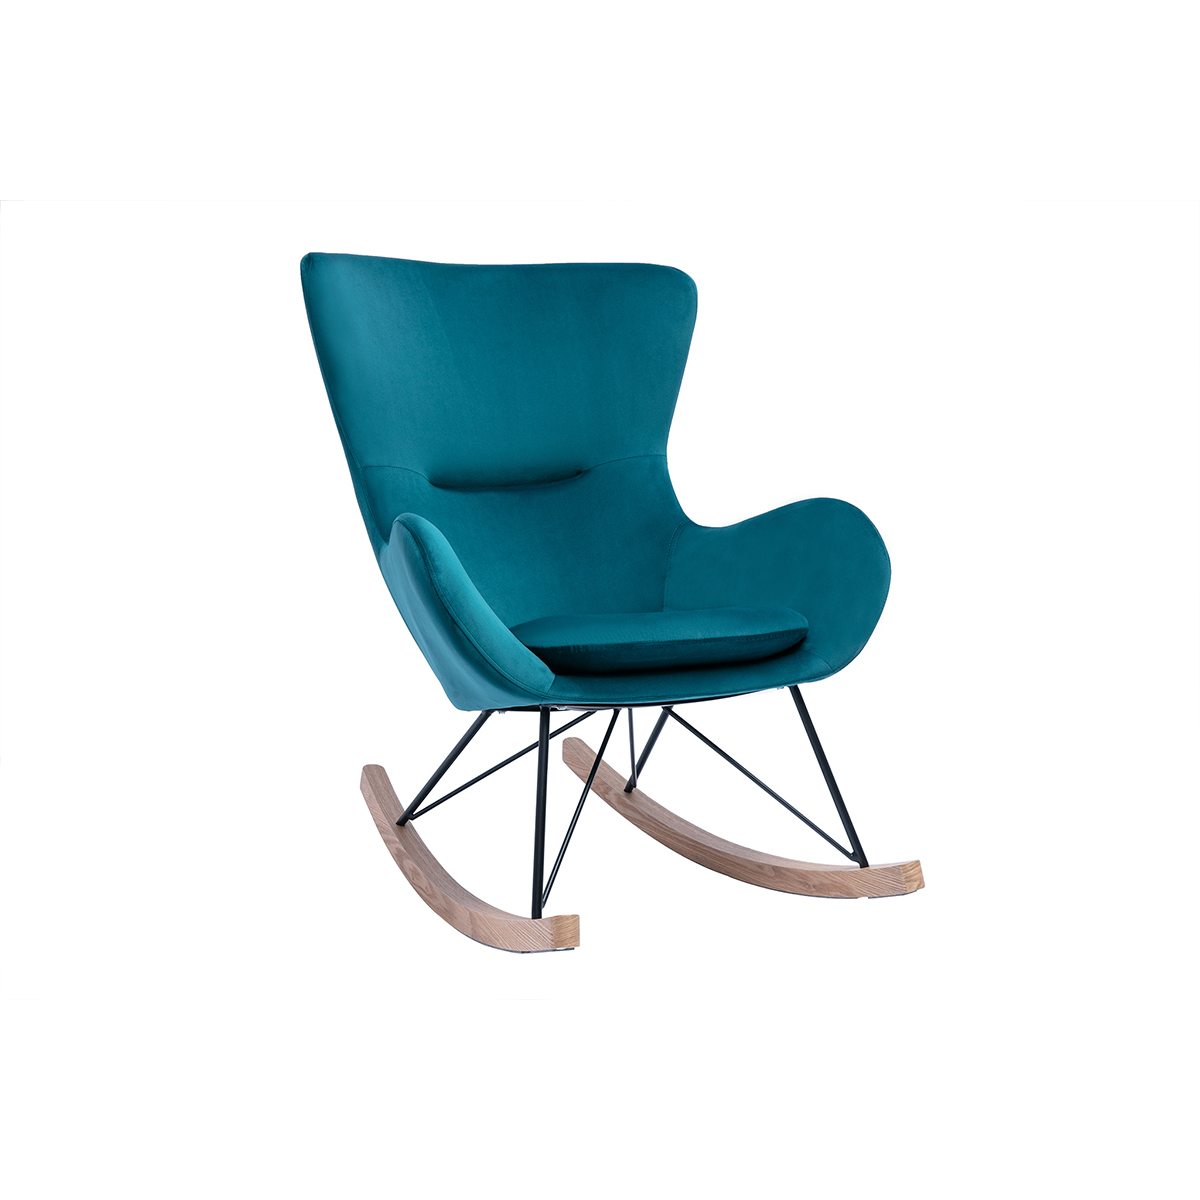 Rocking chair design en tissu velours gaufré bleu pétrole, métal noir et bois clair ESKUA vue1